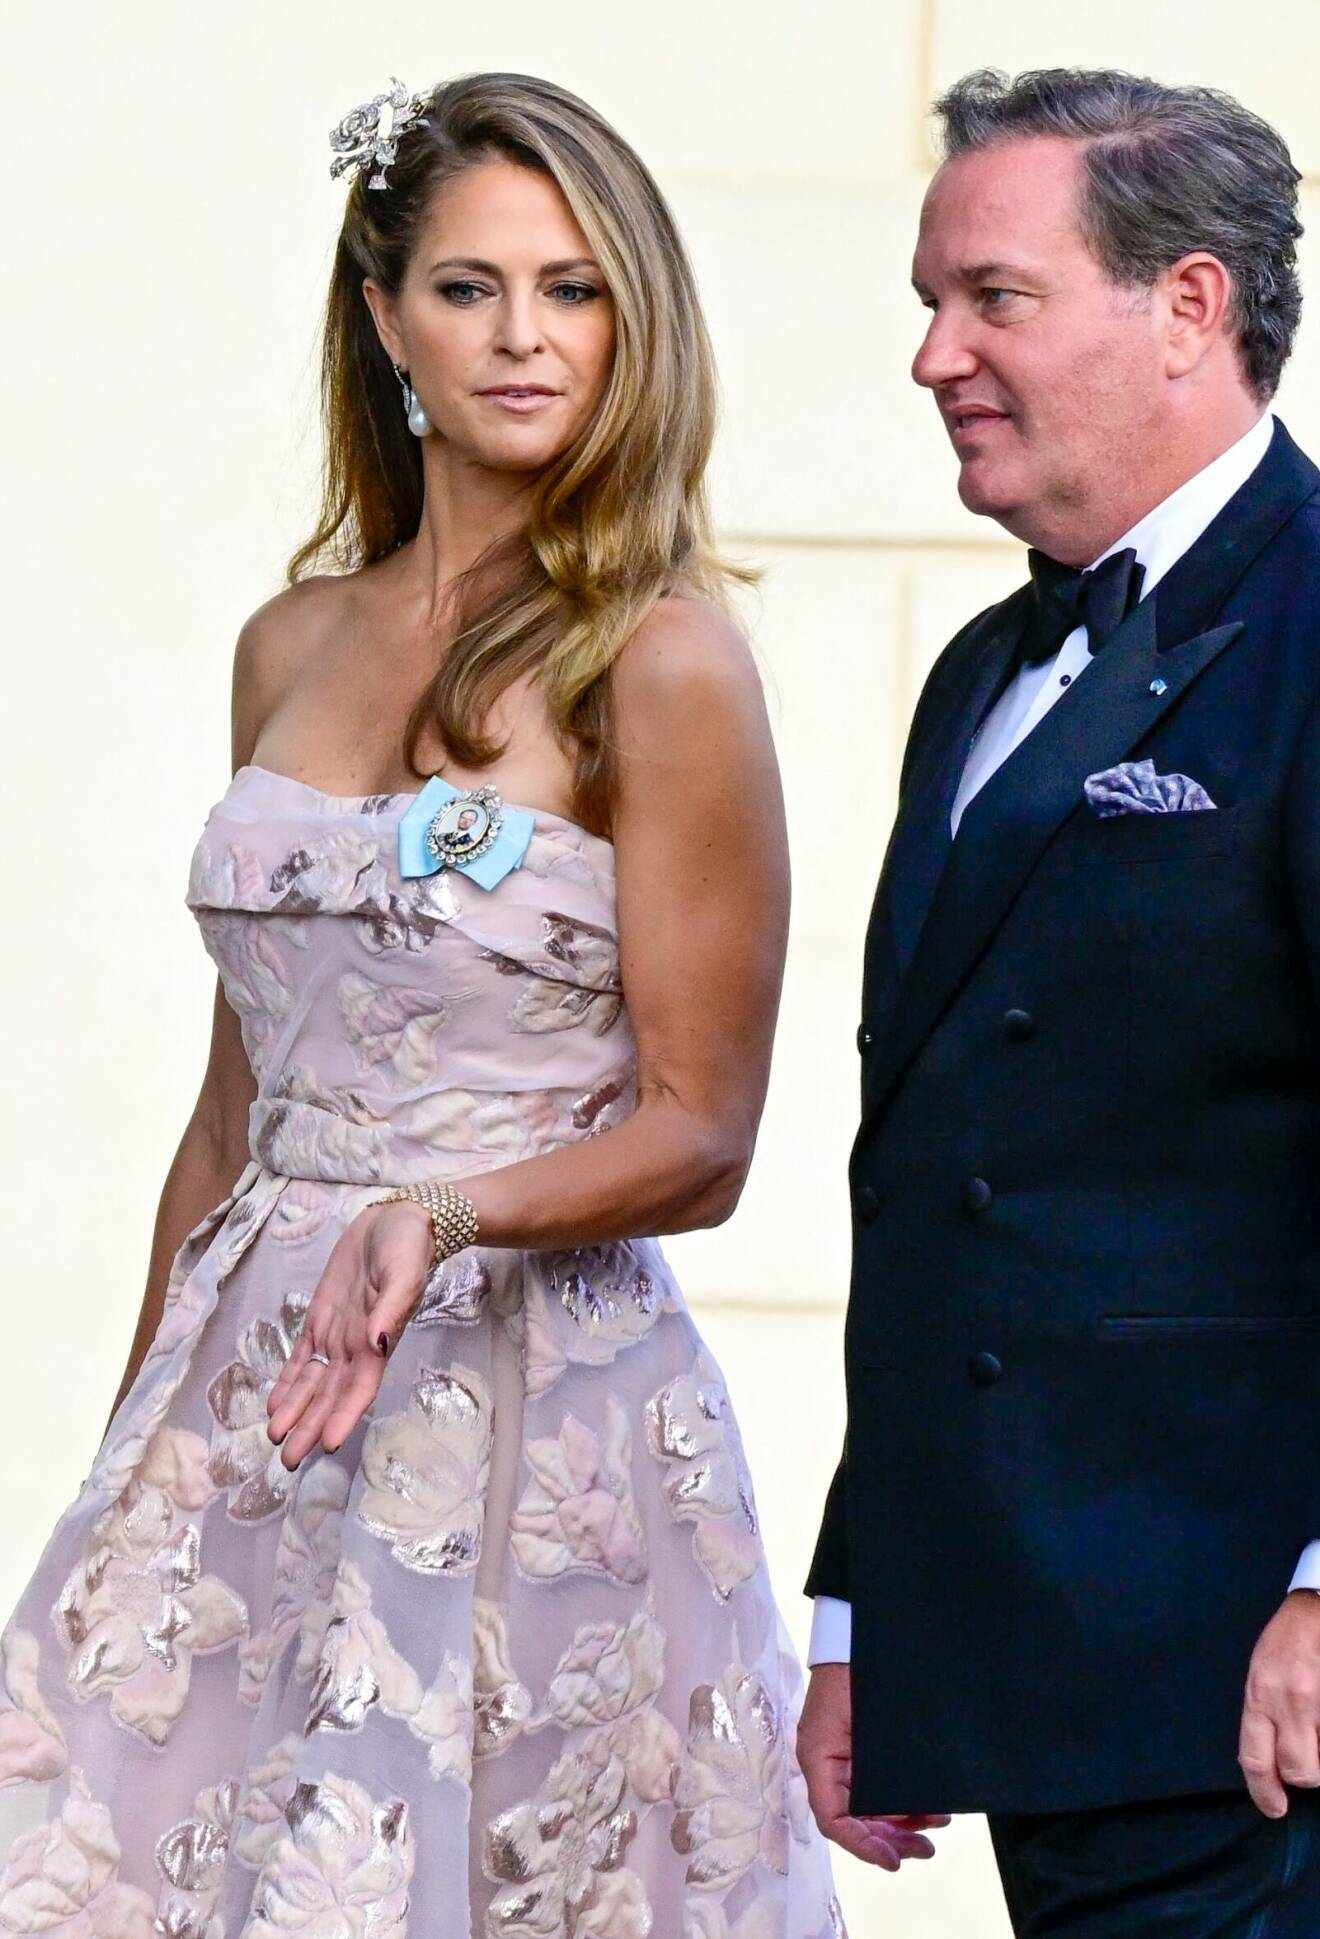 Prinsessan Madeleine och Chris O'Neill anländer till kvällens jubileumsföreställning på Drottningholms slottsteater med anledning av kungens 50-årsjubileum.